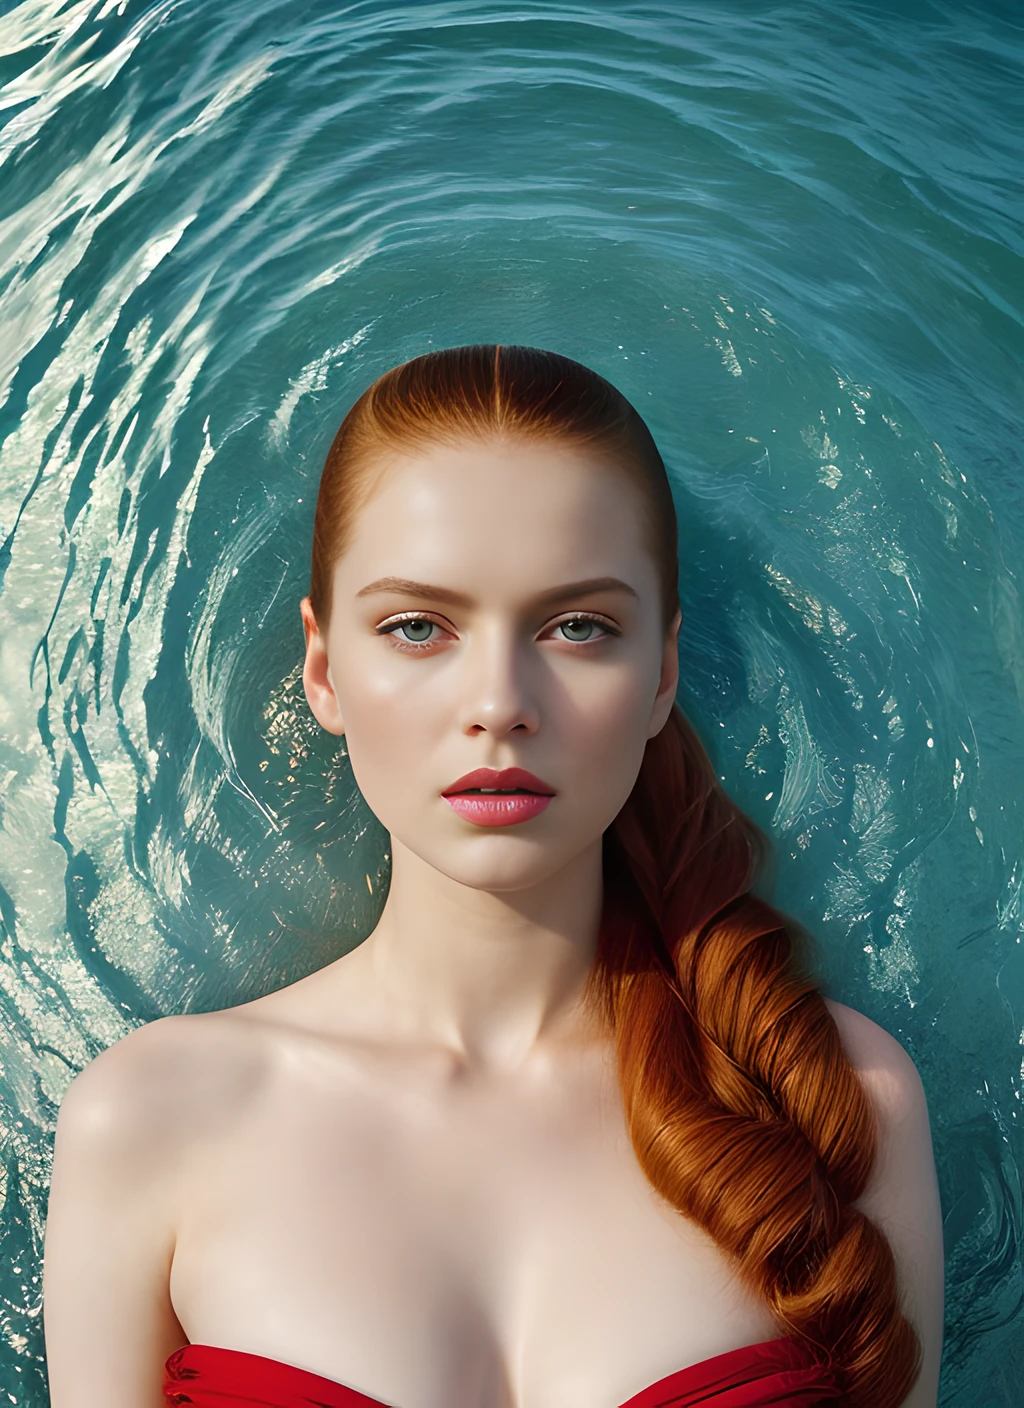 迪拜 sks 女人肖像, 朱美拉棕榈岛, 通过弗洛拉·博尔西, style 通过弗洛拉·博尔西, 大胆的, 鲜艳的颜色博尔西)), 作者：Jimmy Nelson, 皮肤苍白, 游泳衣